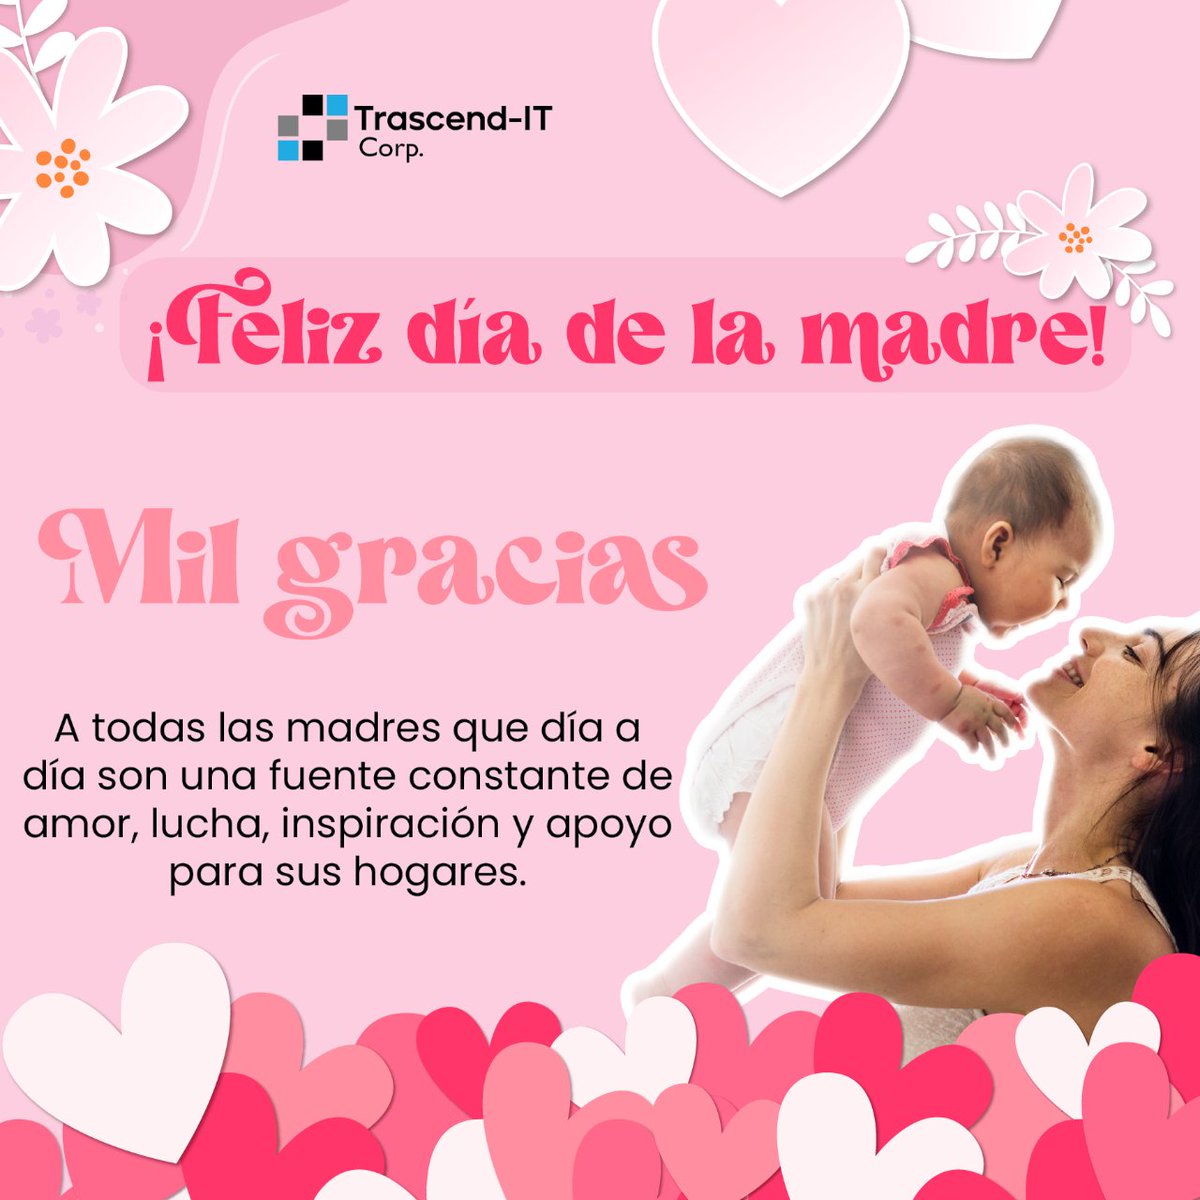 🌸 Feliz Día de las Madres 🌸

En este día especial, queremos rendir homenaje a todas las madres maravillosas que nos brindan su amor incondicional. ¡ Su dedicación y entrega merecen ser reconocidas!

#DíaDeLasMadres #AmorInfinito #MadresEjemplares #FelicidadesMamá #AmorMaternal